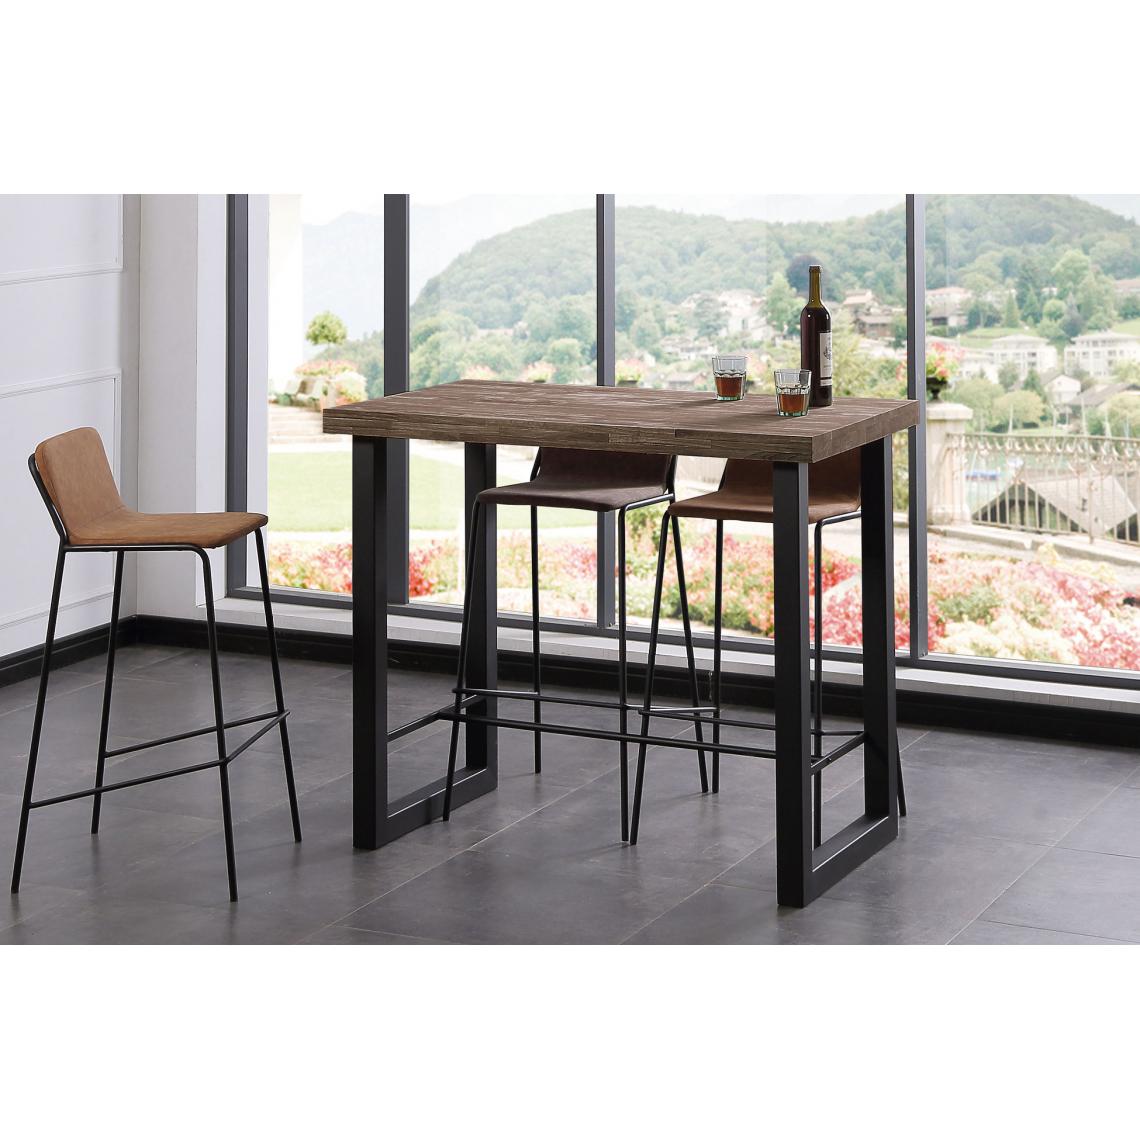 Pegane - Table haute en bois coloris chêne américain / pieds noir - Longueur 120 x profondeur 70 x Hauteur 100 cm - Tables à manger